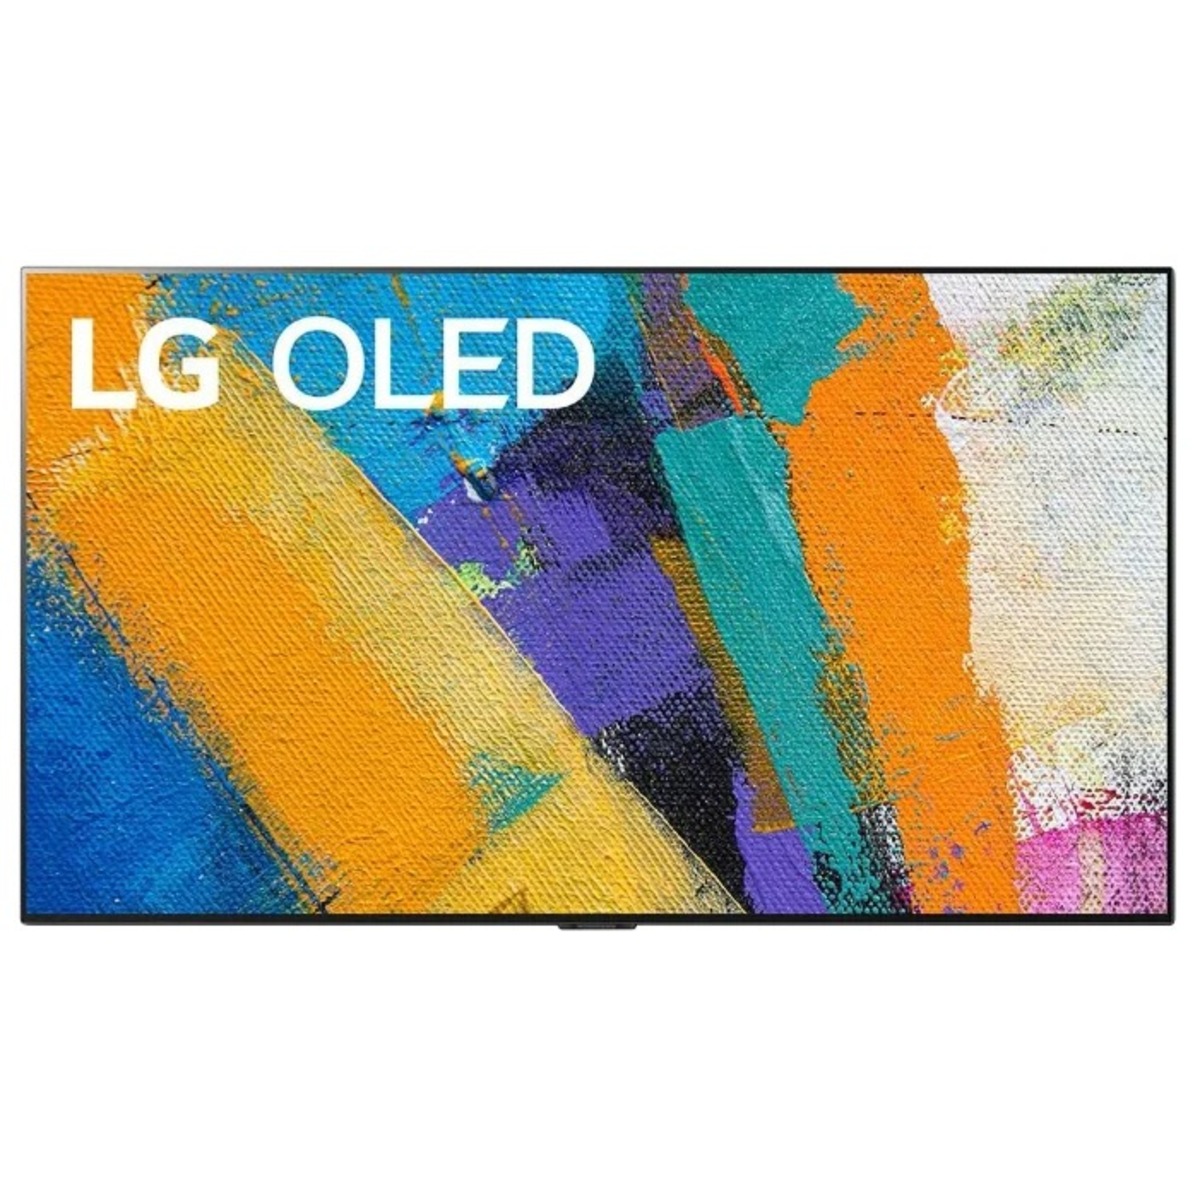 Телевизор LG 65